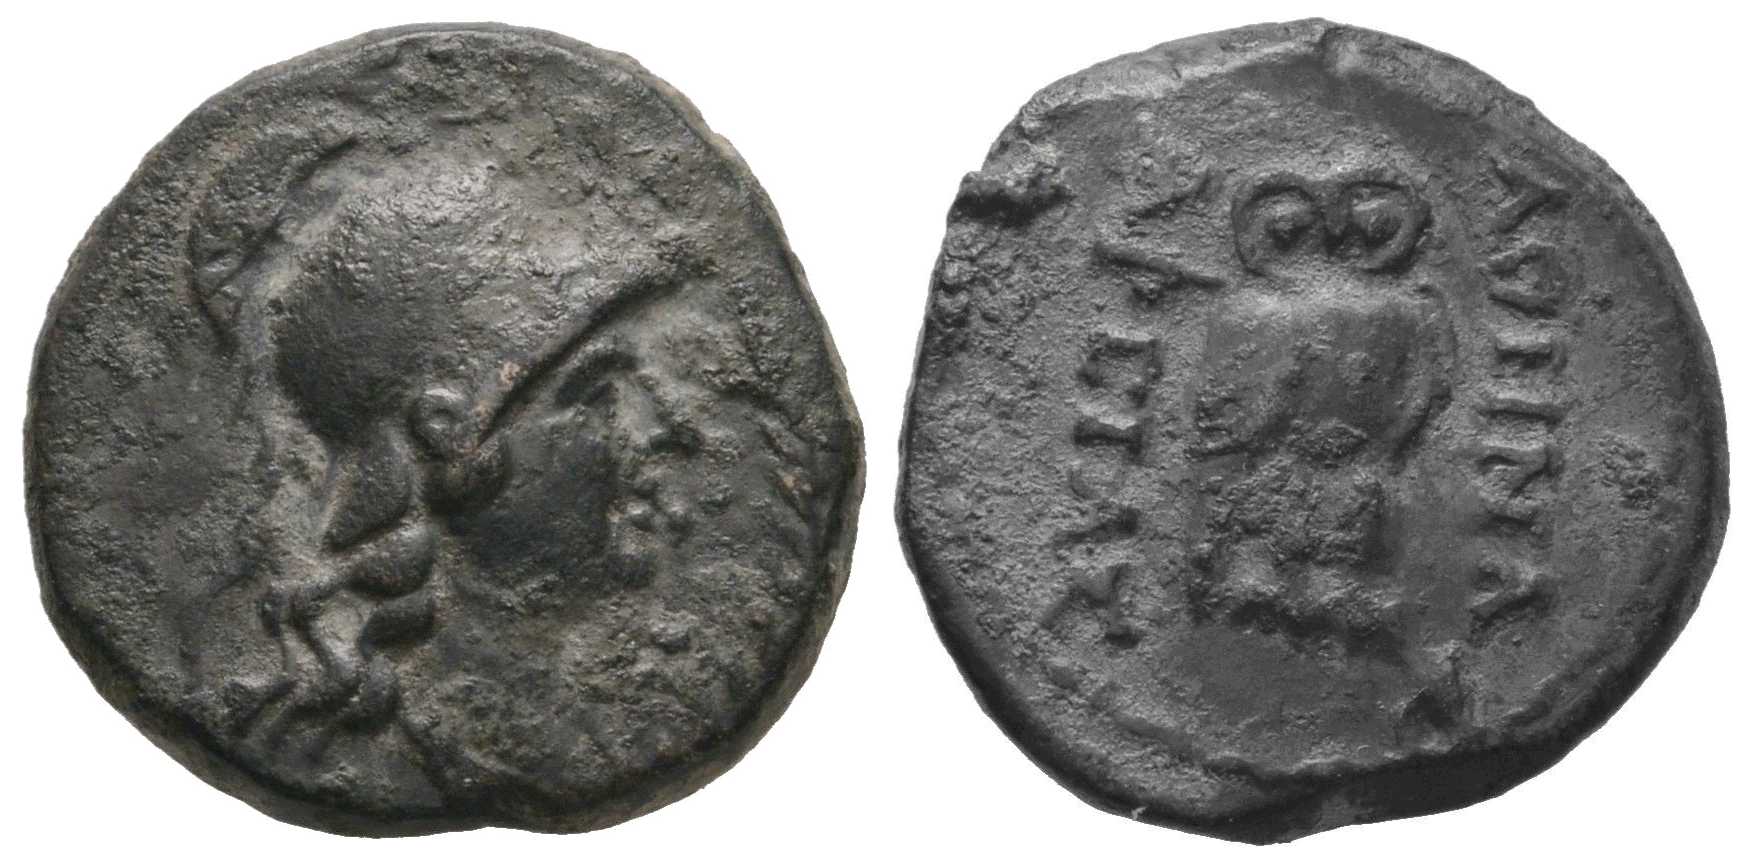 6474 Pergamum Mysia AE